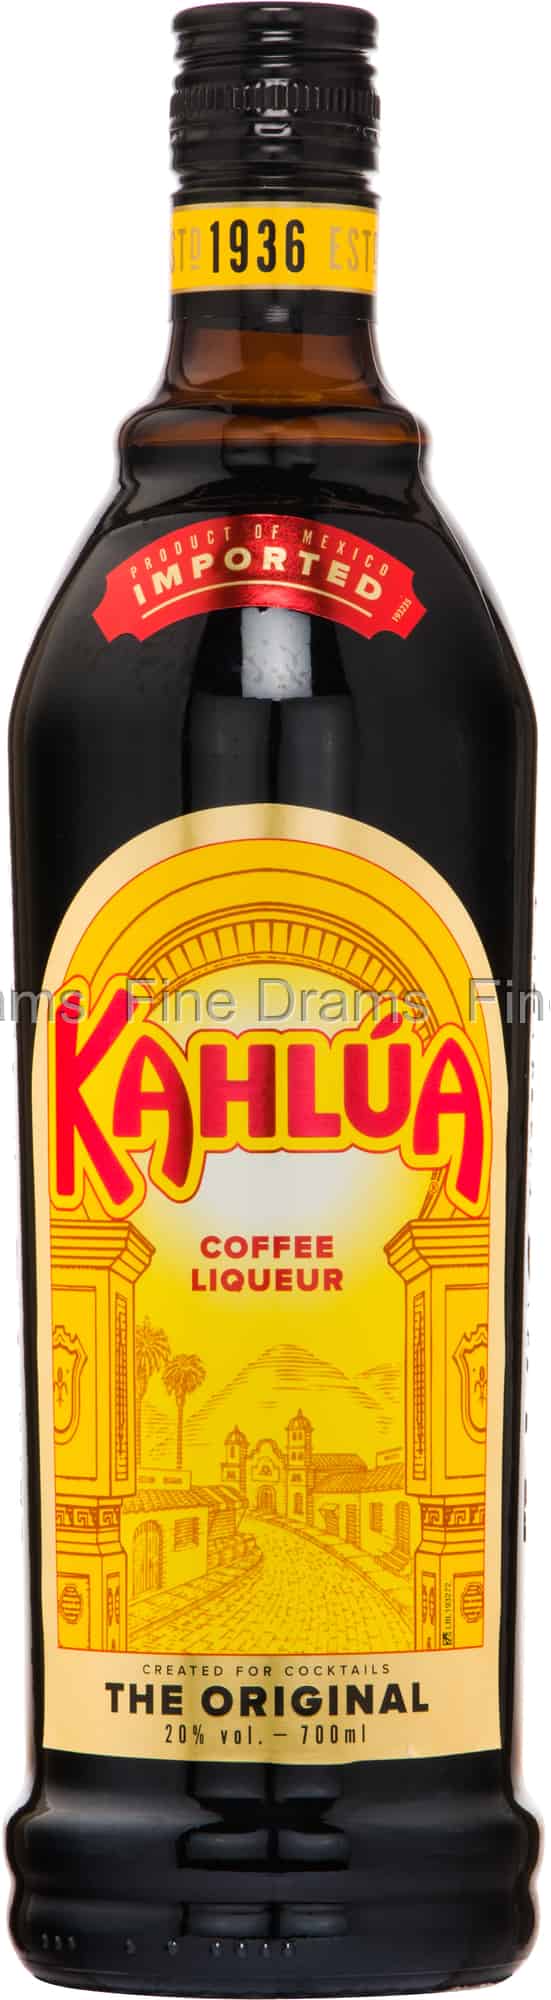 Coffee Kahlúa Liqueur